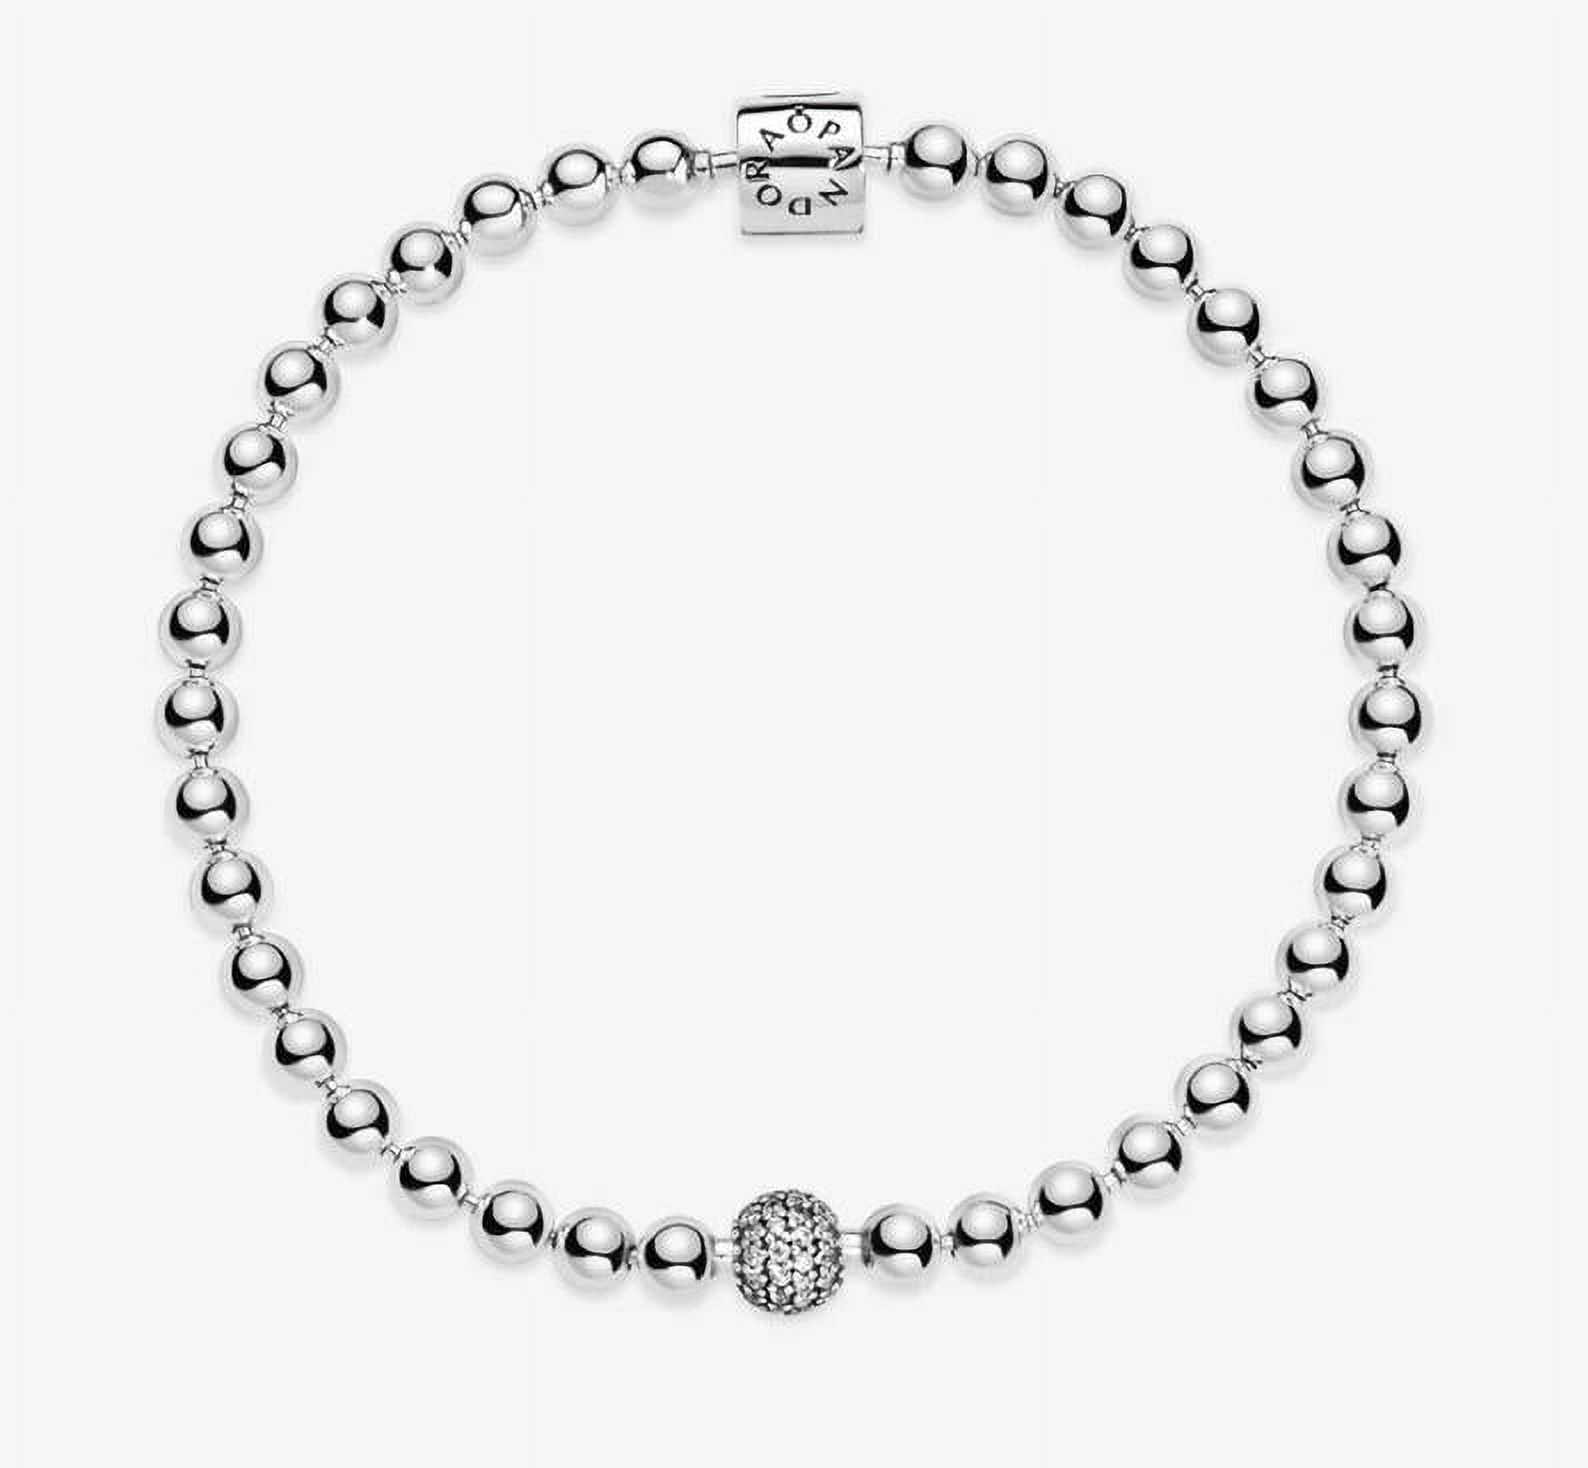 PANDORA Beads & Pave Bracelet Size 19 - 598342CZ-19 - image 5 of 6